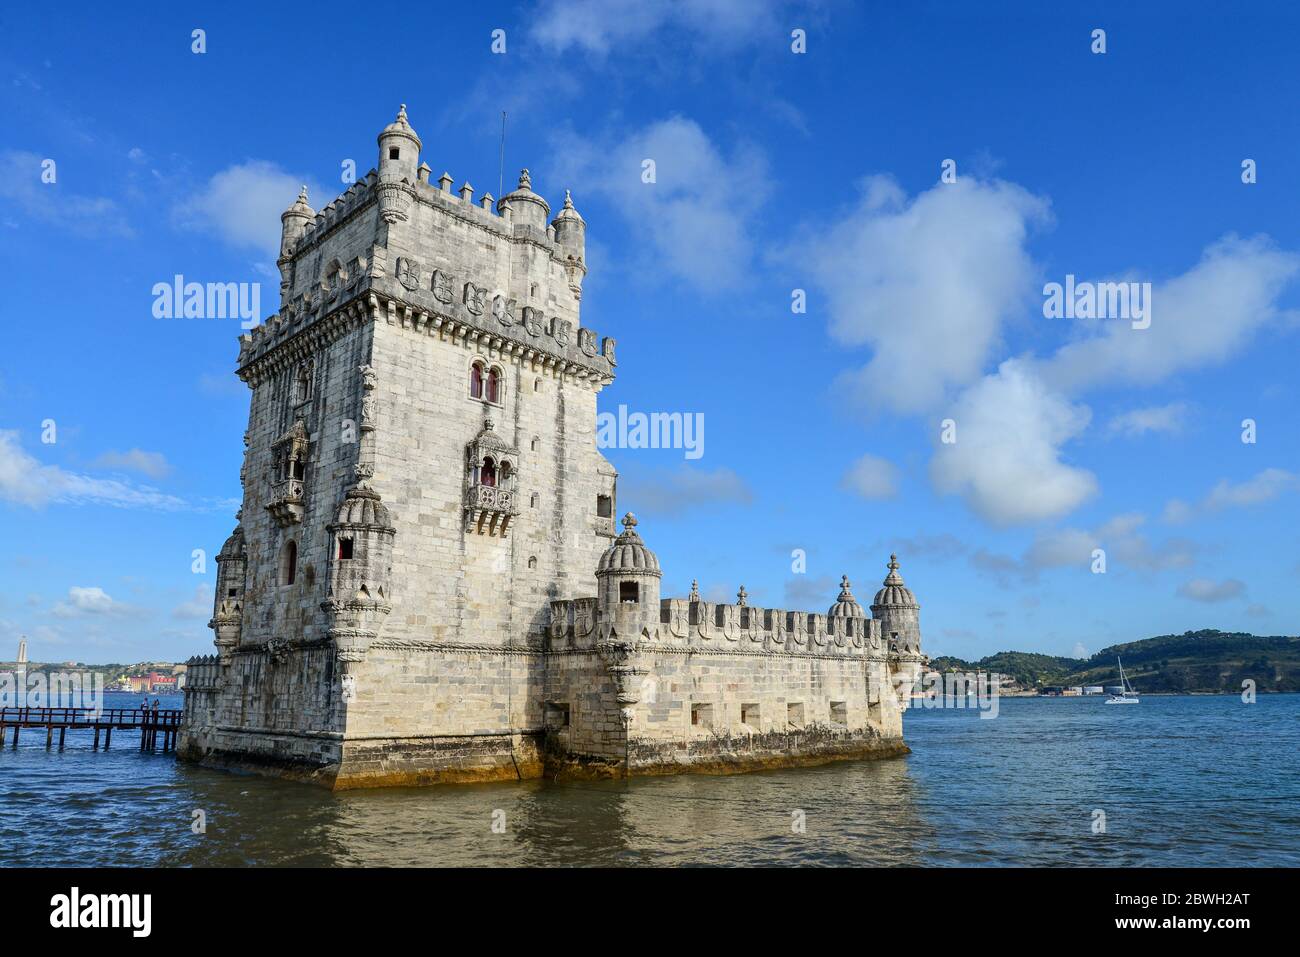 Vista sulla torre Belem o sulla Torre de Belem in stile portoghese Manueline sulla riva settentrionale del fiume Tago a Lisbona, Portogallo Foto Stock